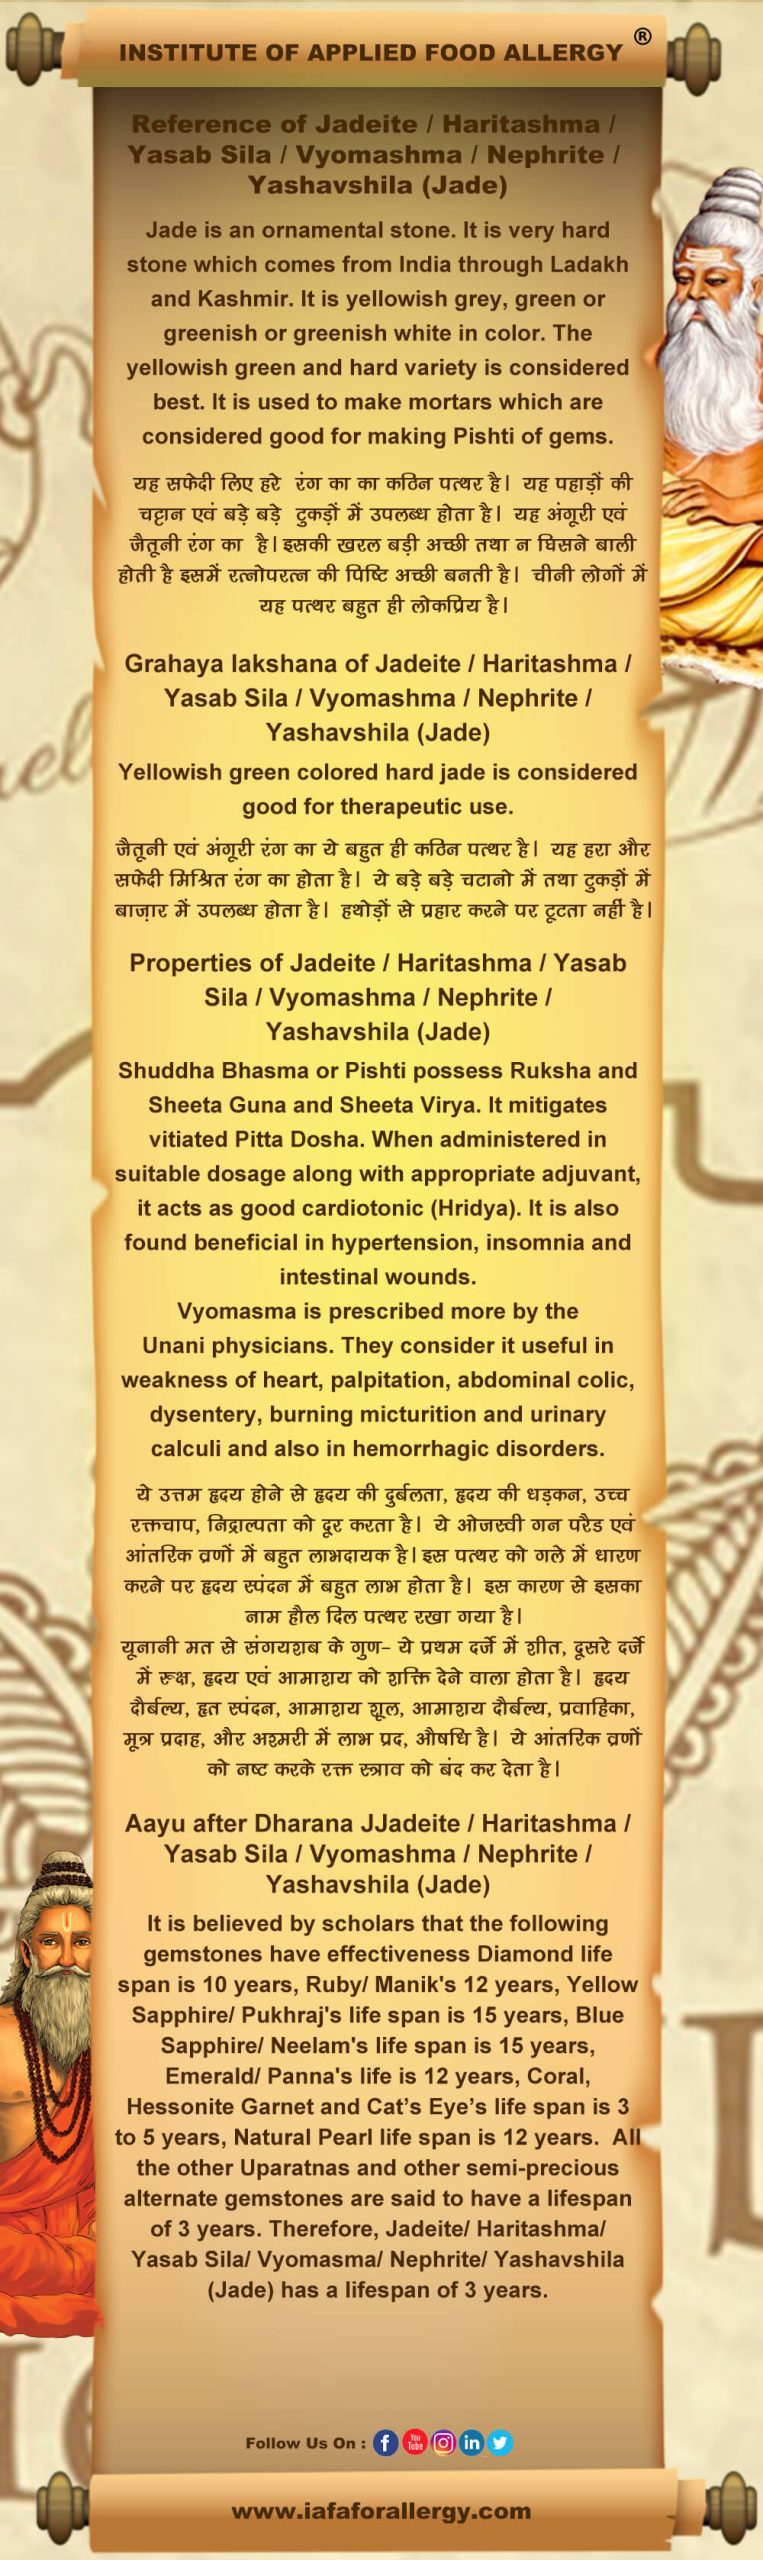 Reference of Jadeite / Haritashma / Yasab Sila / Vyomashma / Nephrite / Yashavshila (Jade)